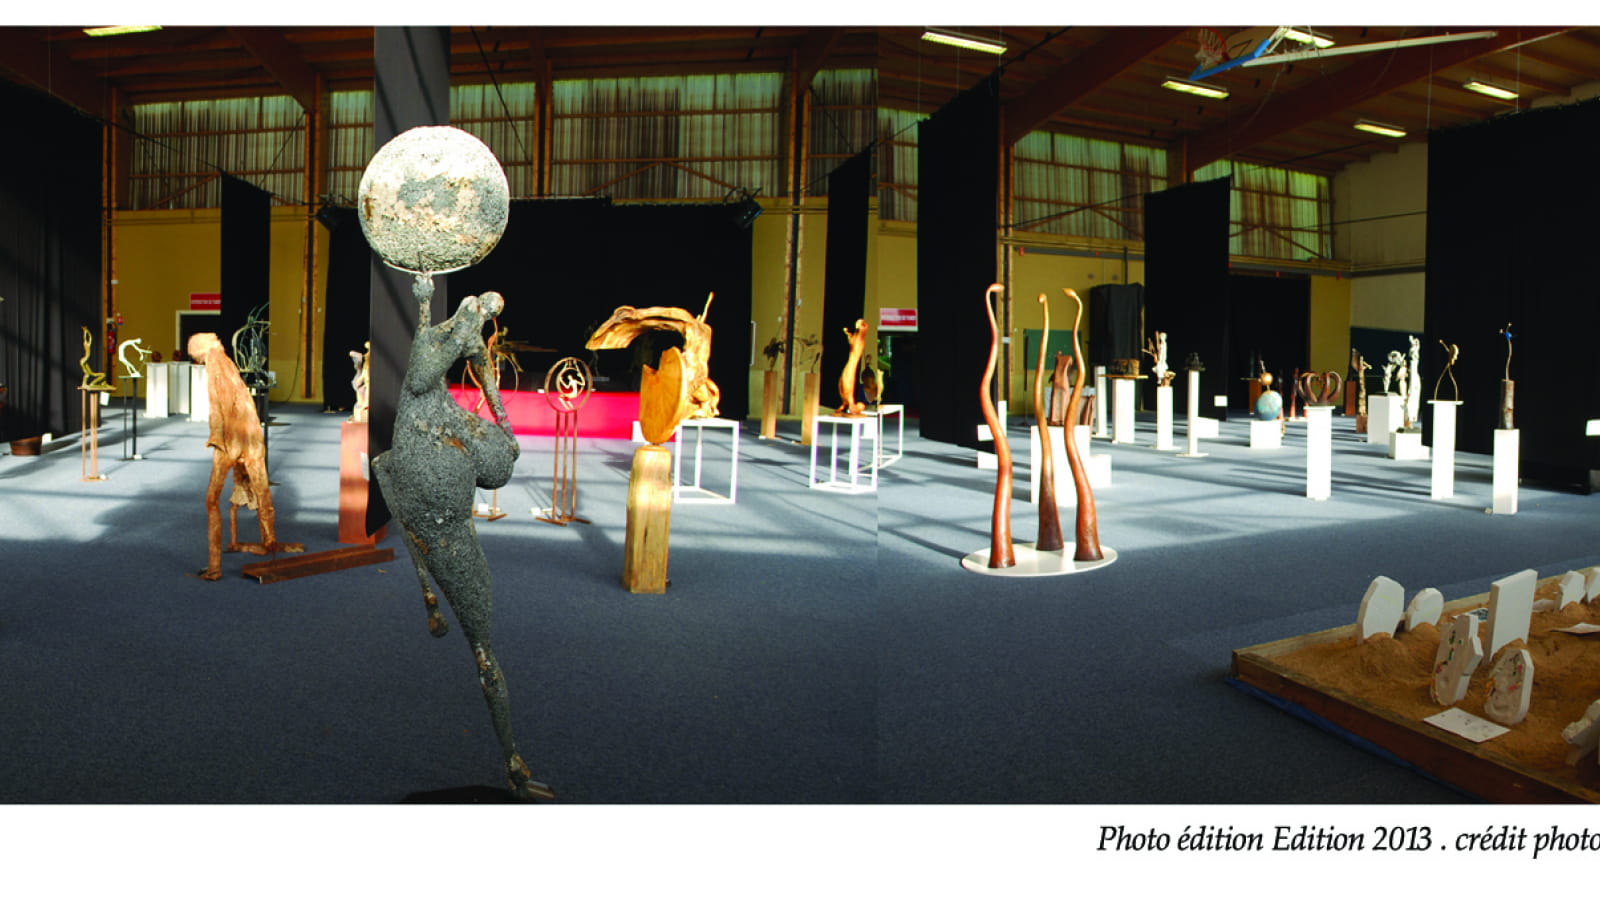 Biennale Interactive de Sculpture Contemporaine en Bourgogne